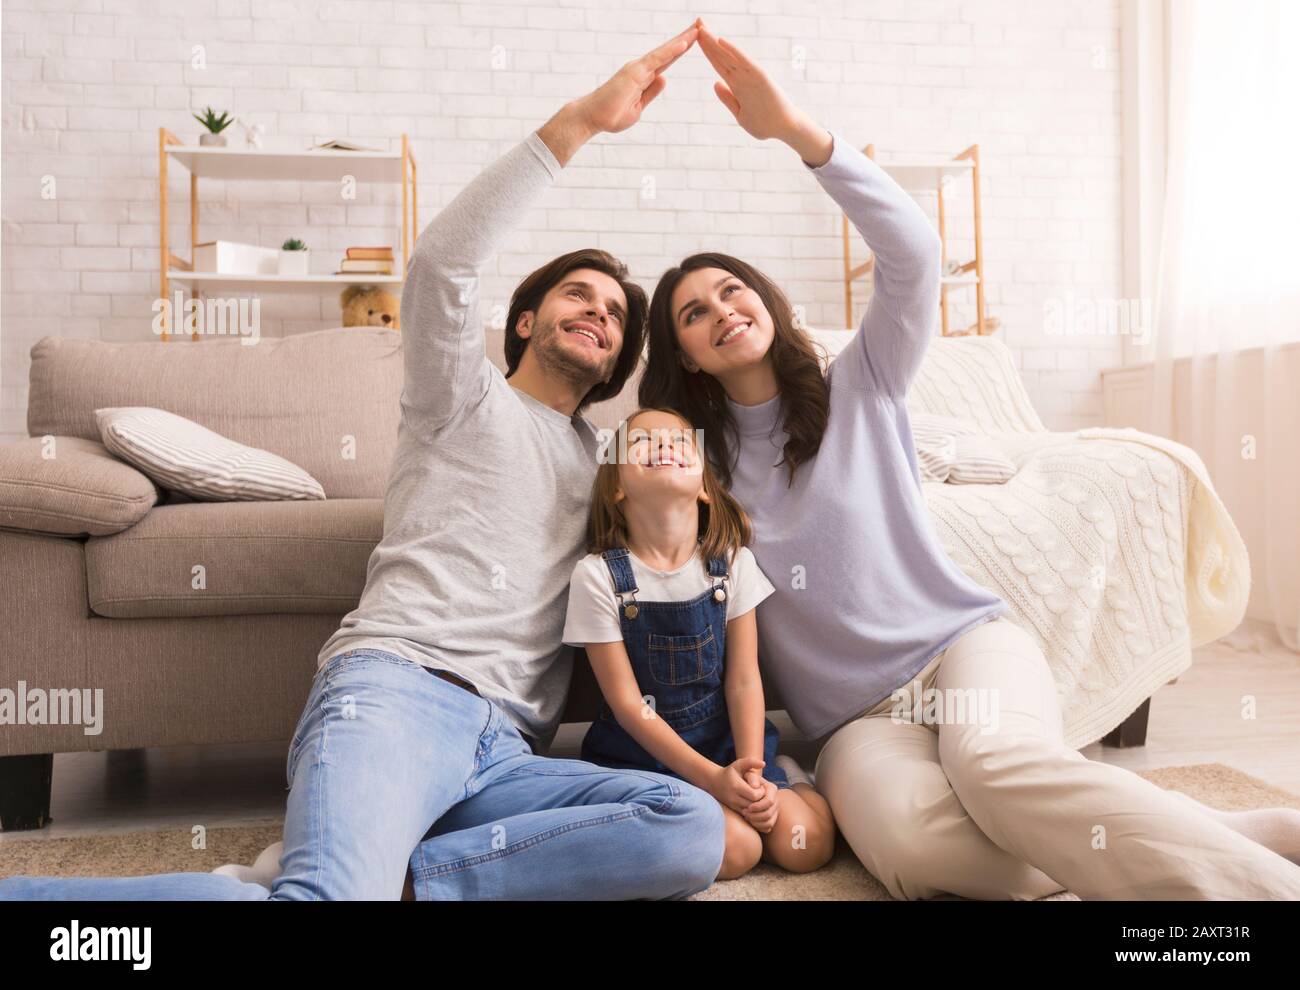 Fürsorgliche Eltern machen symbolisches Handdach über dem Kopf der kleinen Tochter Stockfoto